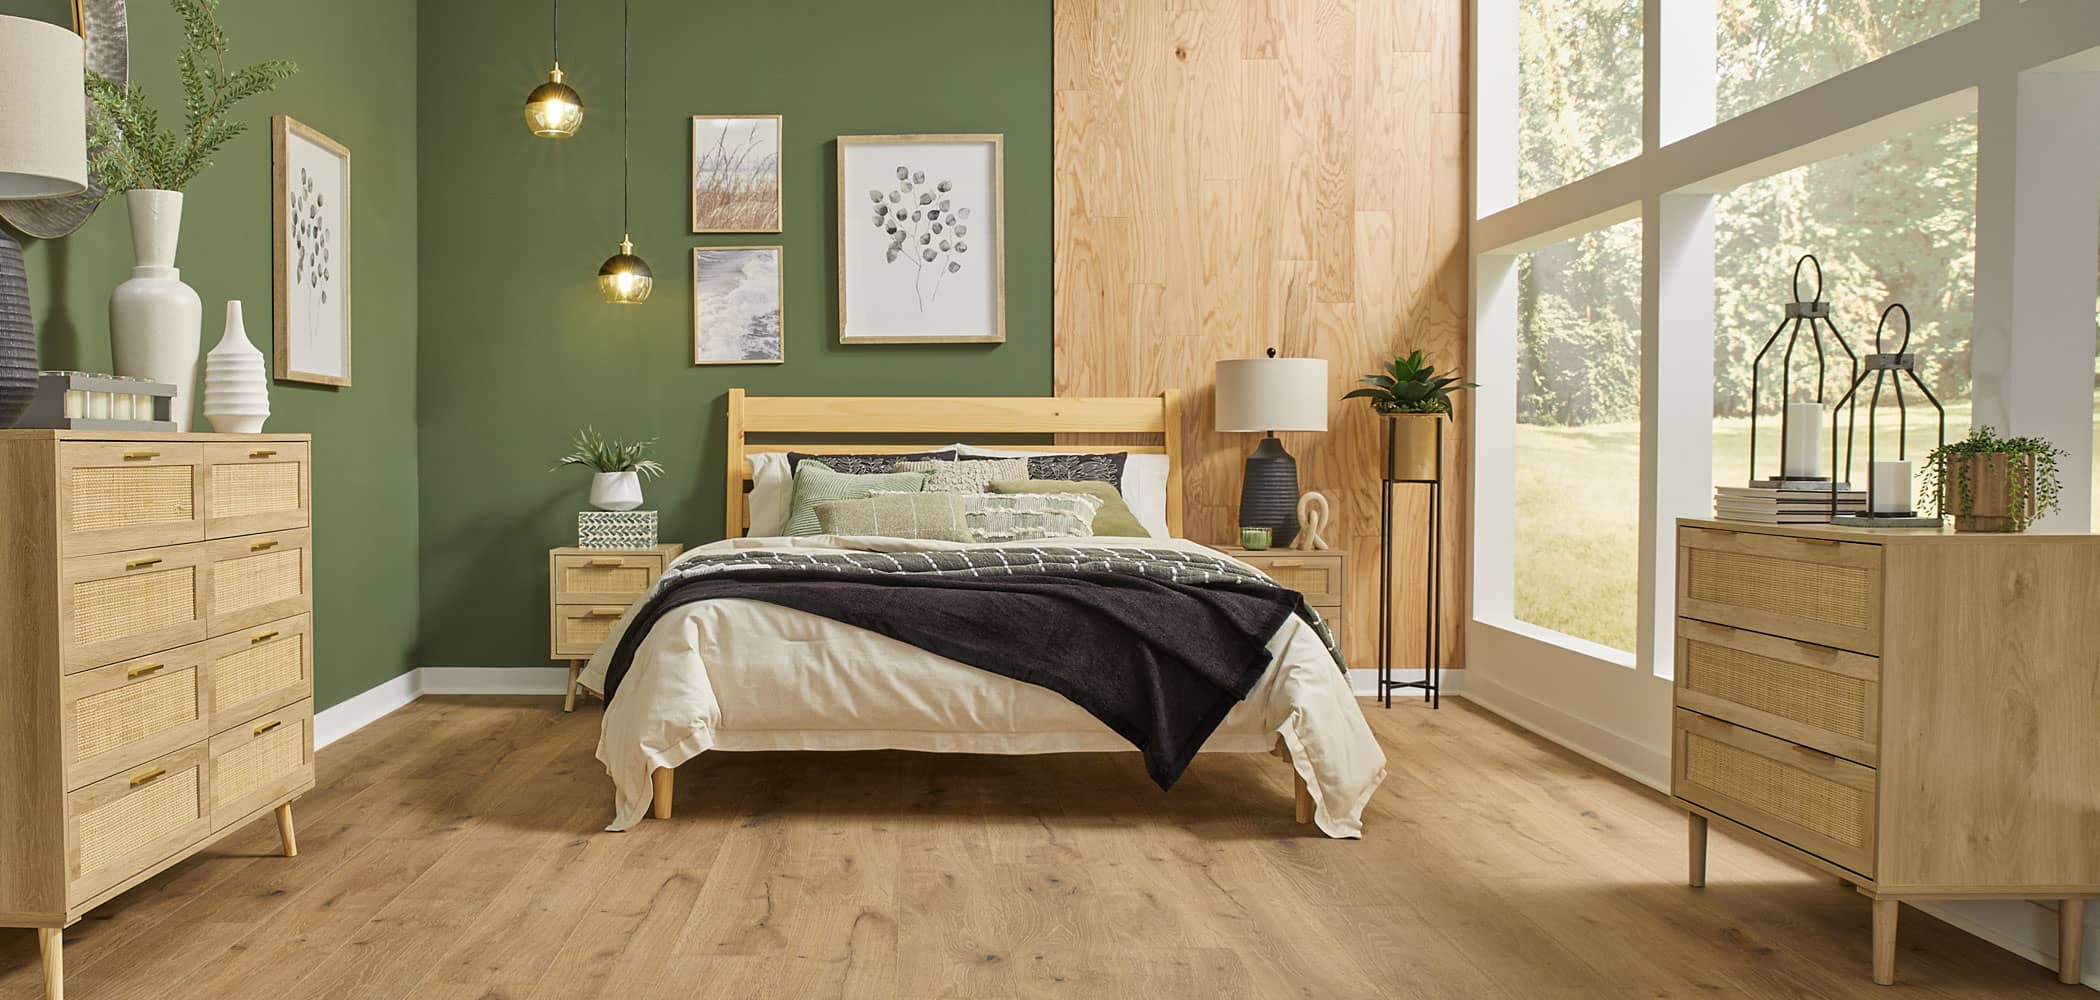 Light brown waterproof rigid vinyl plank floor in bedroom with green walls plus blonde wood accent wall and blonde wood bed with cream and brown bedding and blonde wood tables